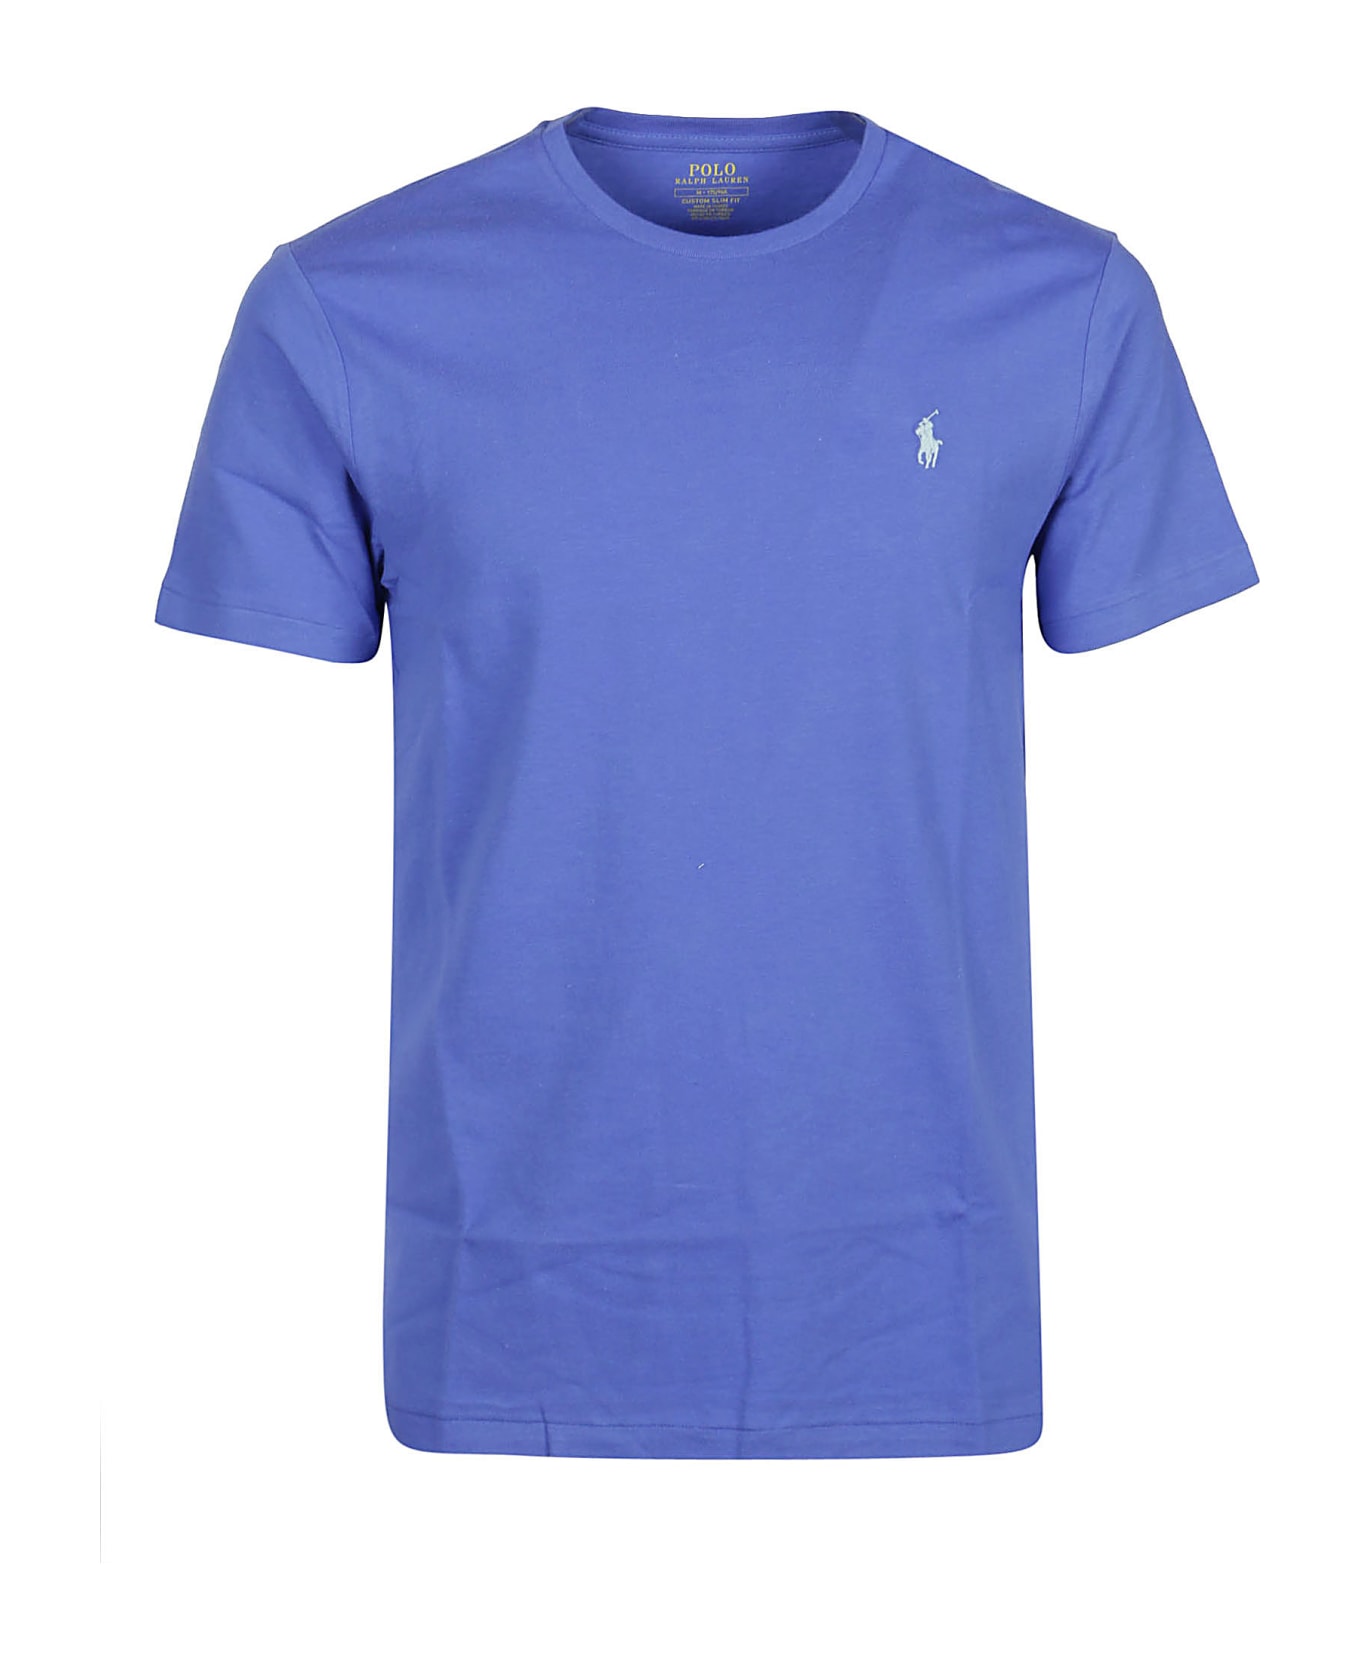 Ralph Lauren T-shirt - Maidstone Blue